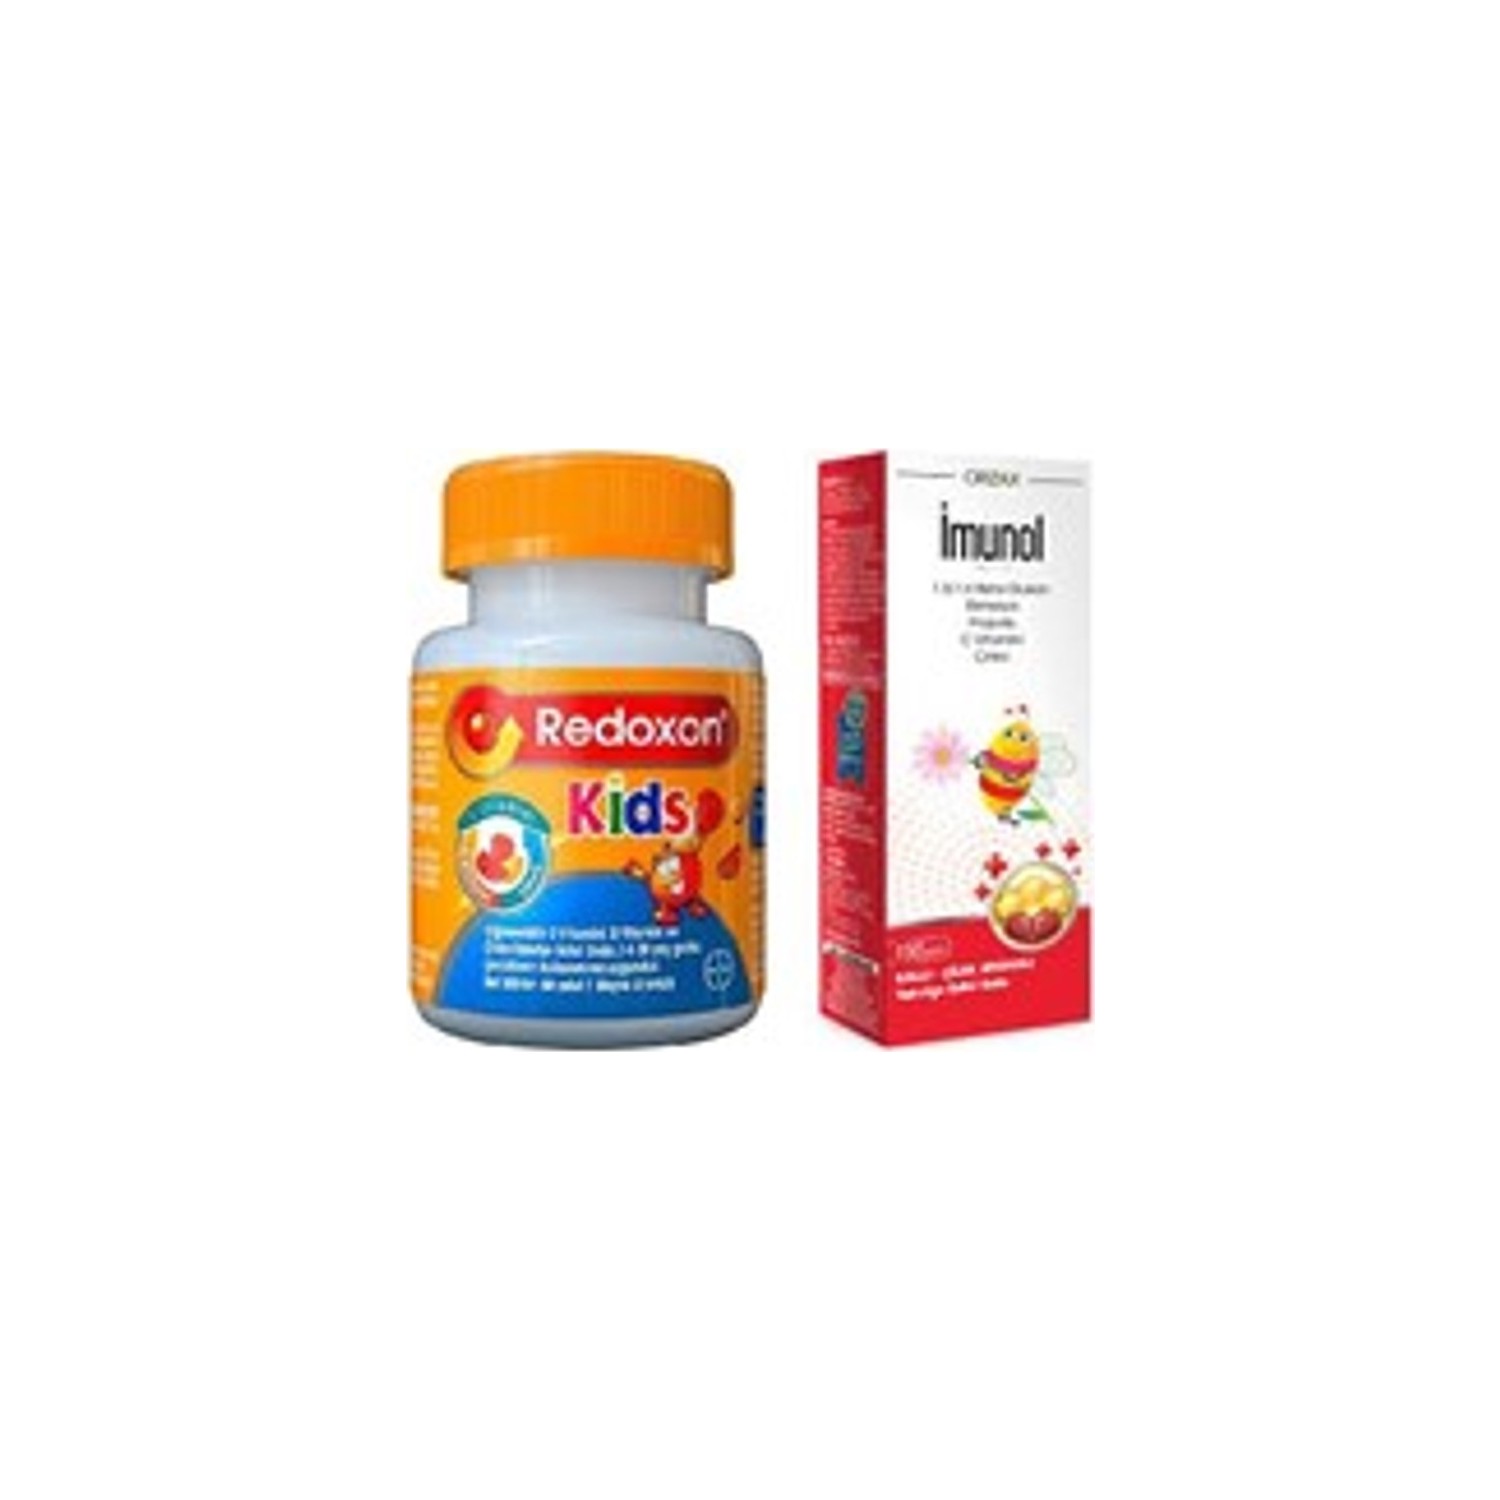 Пищевая добавка Redoxon для детей + Сироп Imunol имунол бузинный сироп orzax 4 упаковки по 150 мл